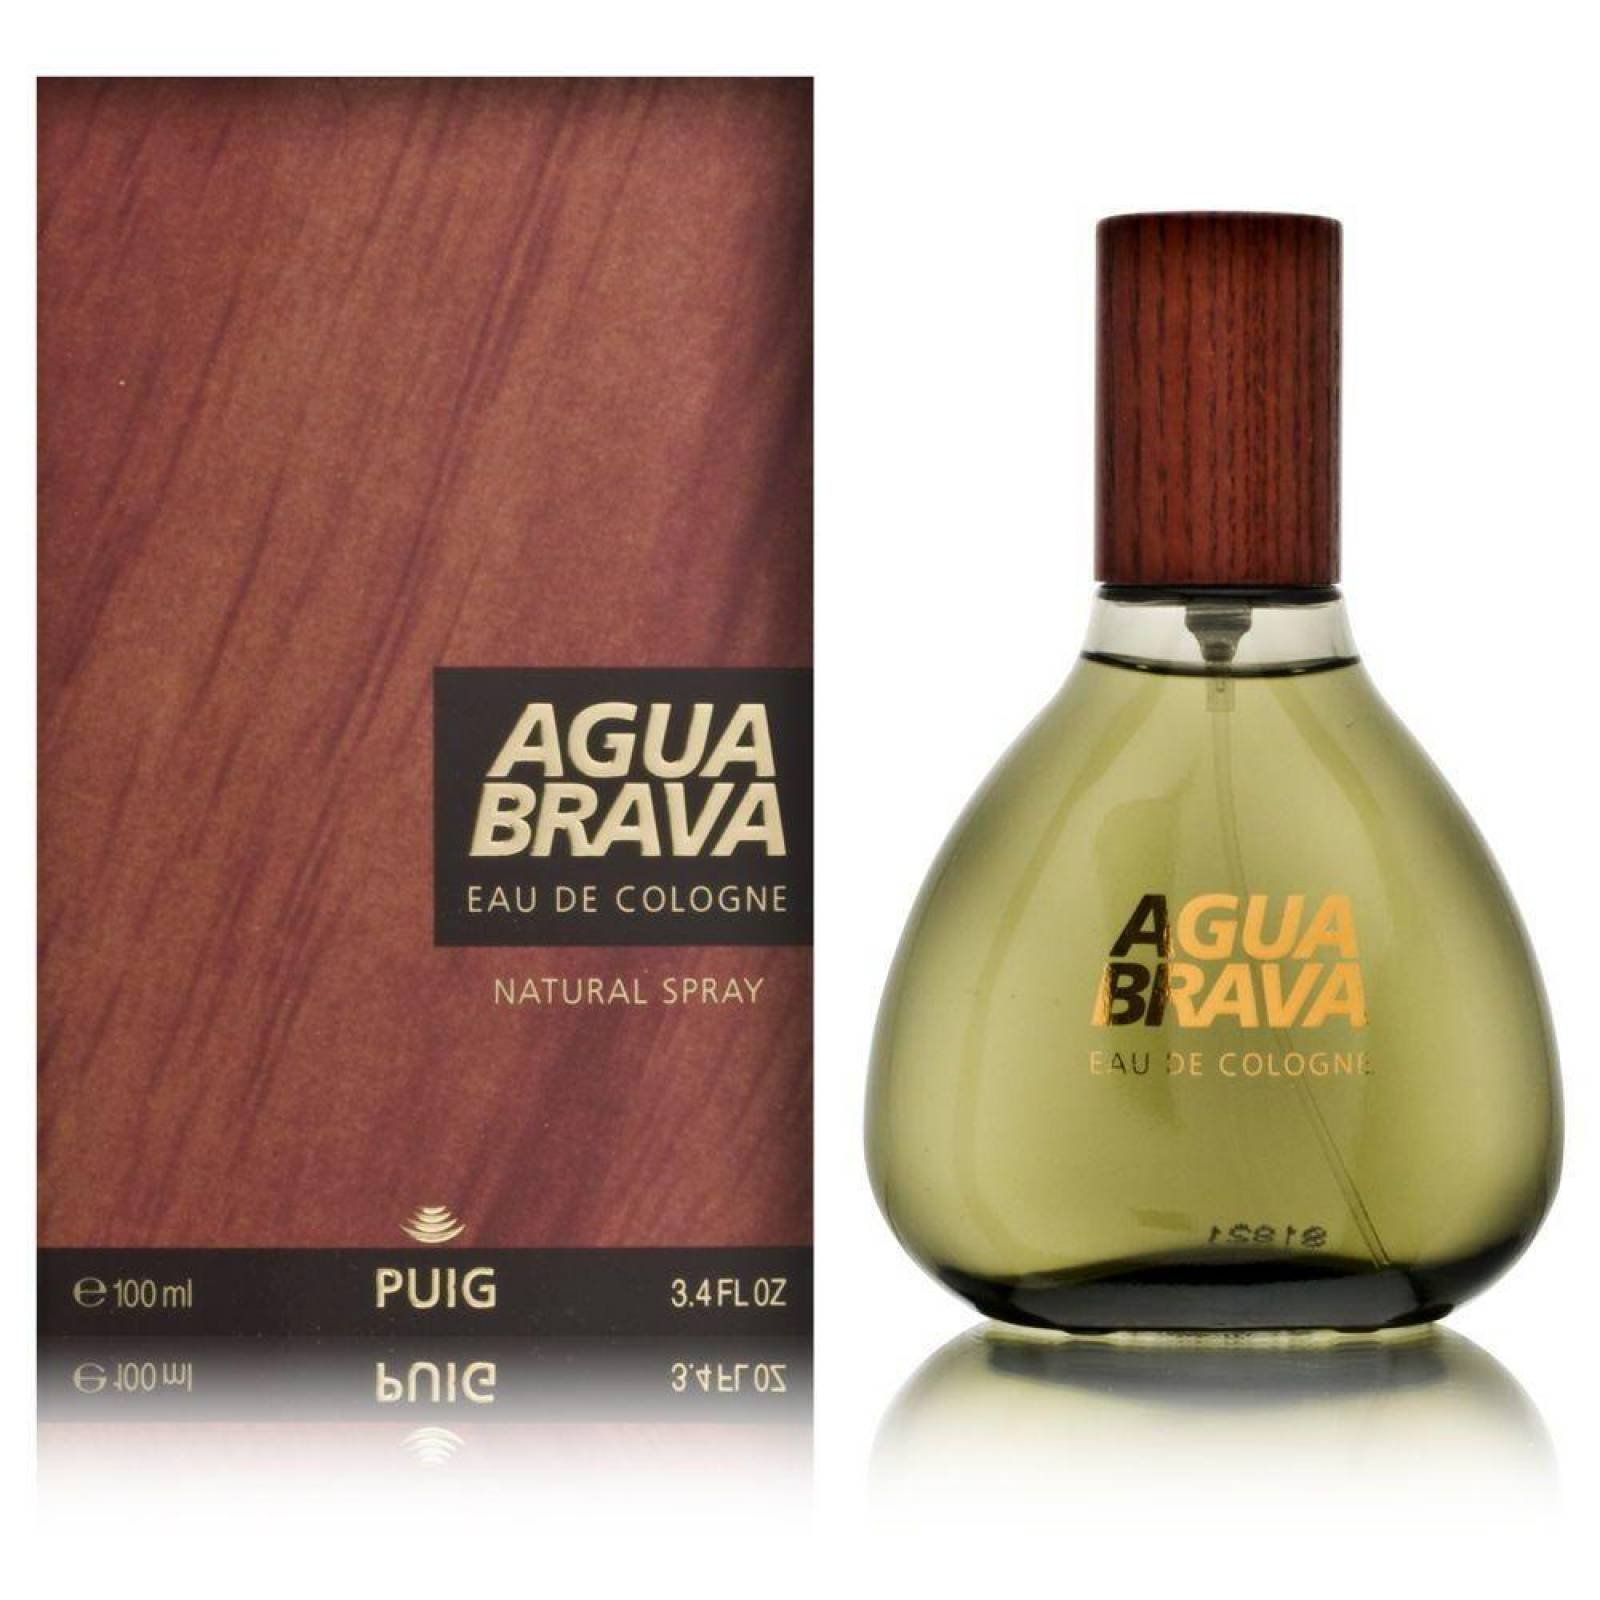 AGUA BRAVA - ANTONIO PUIG - EDC SPRAY 100ML